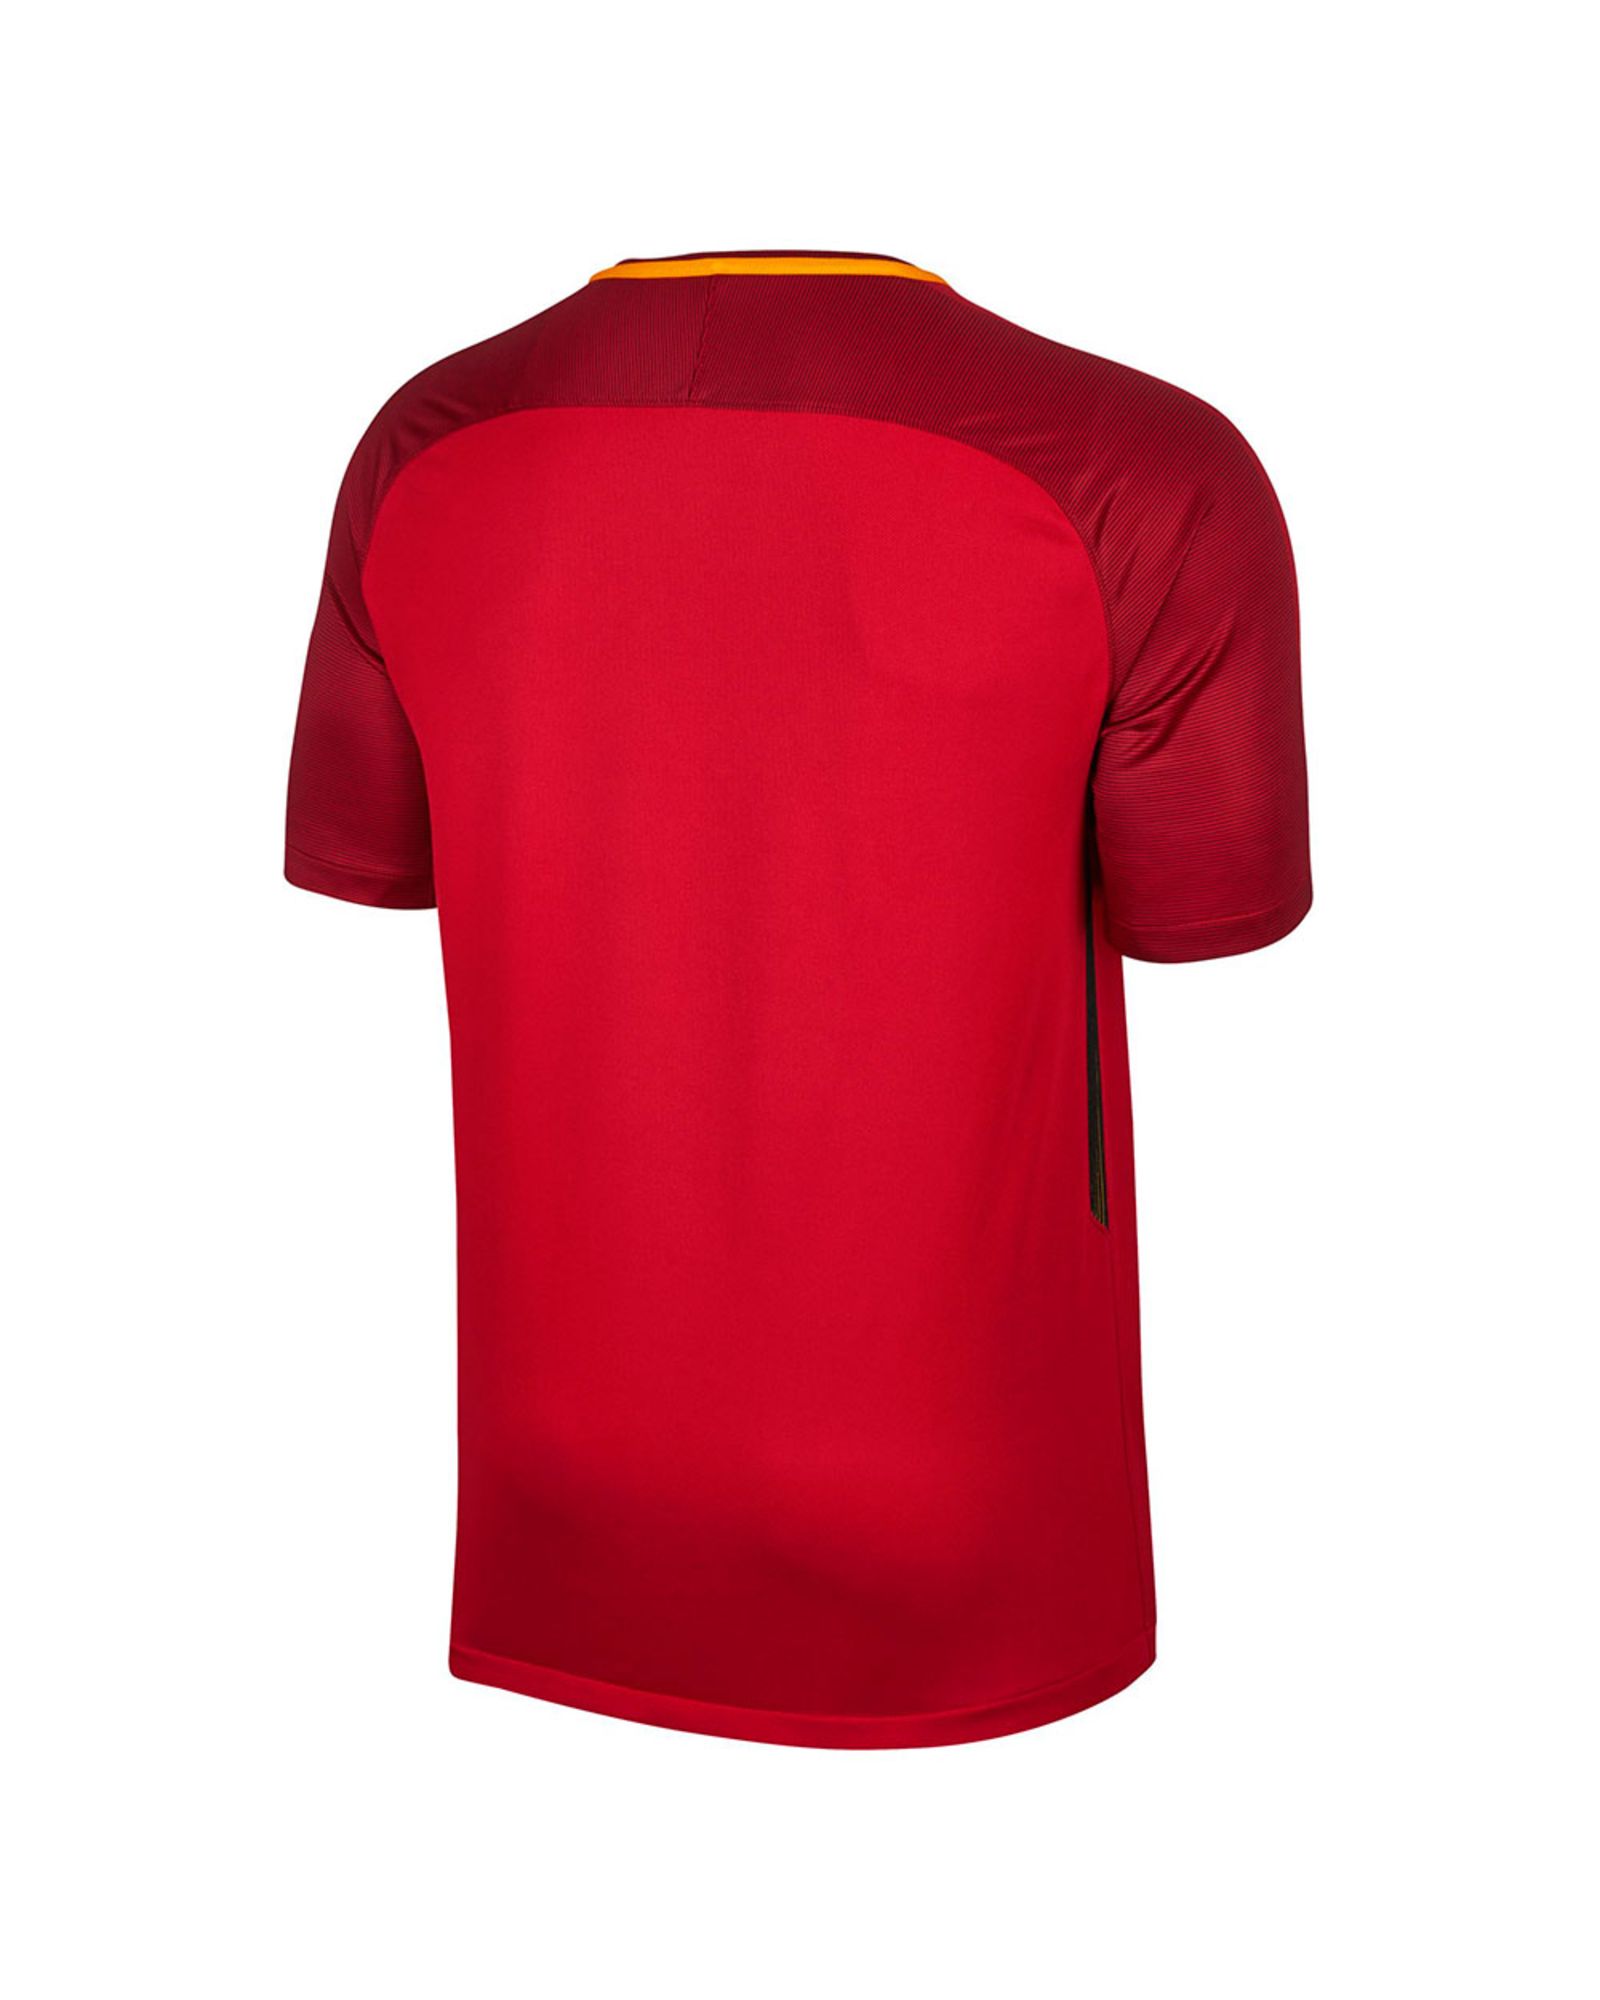 Camiseta 1ª AS Roma 2017/2018 Rojo - Fútbol Factory